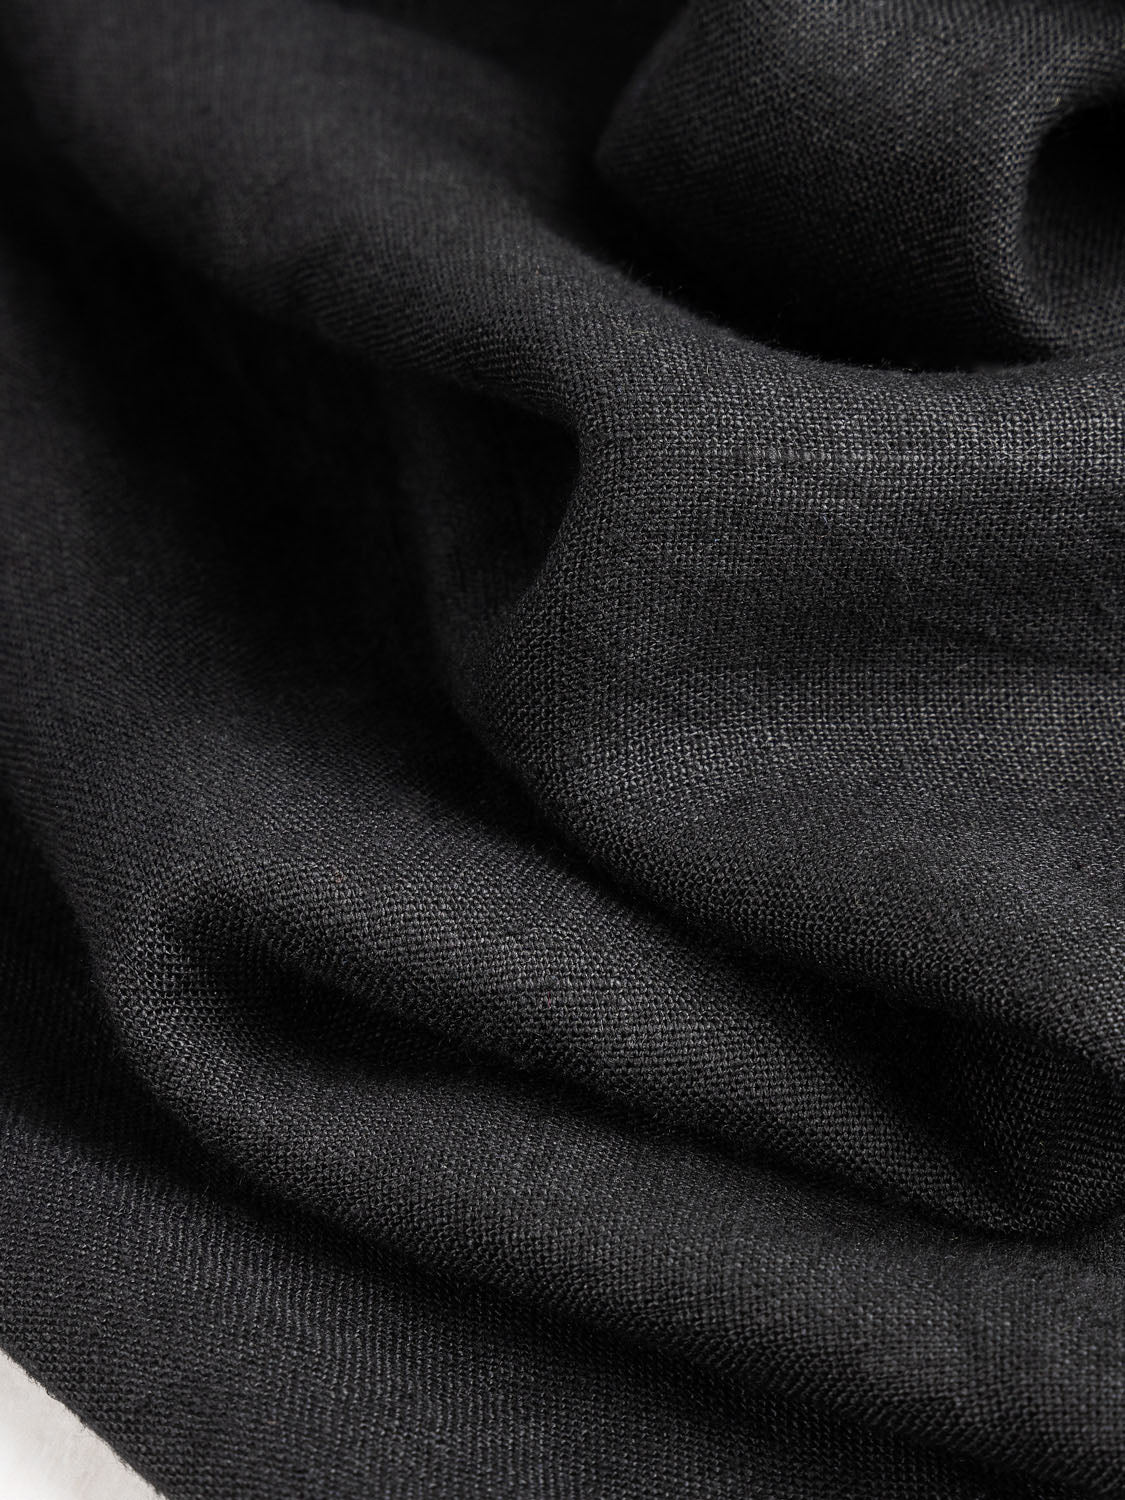 Midweight European Linen - Midnight Black | Core Fabrics